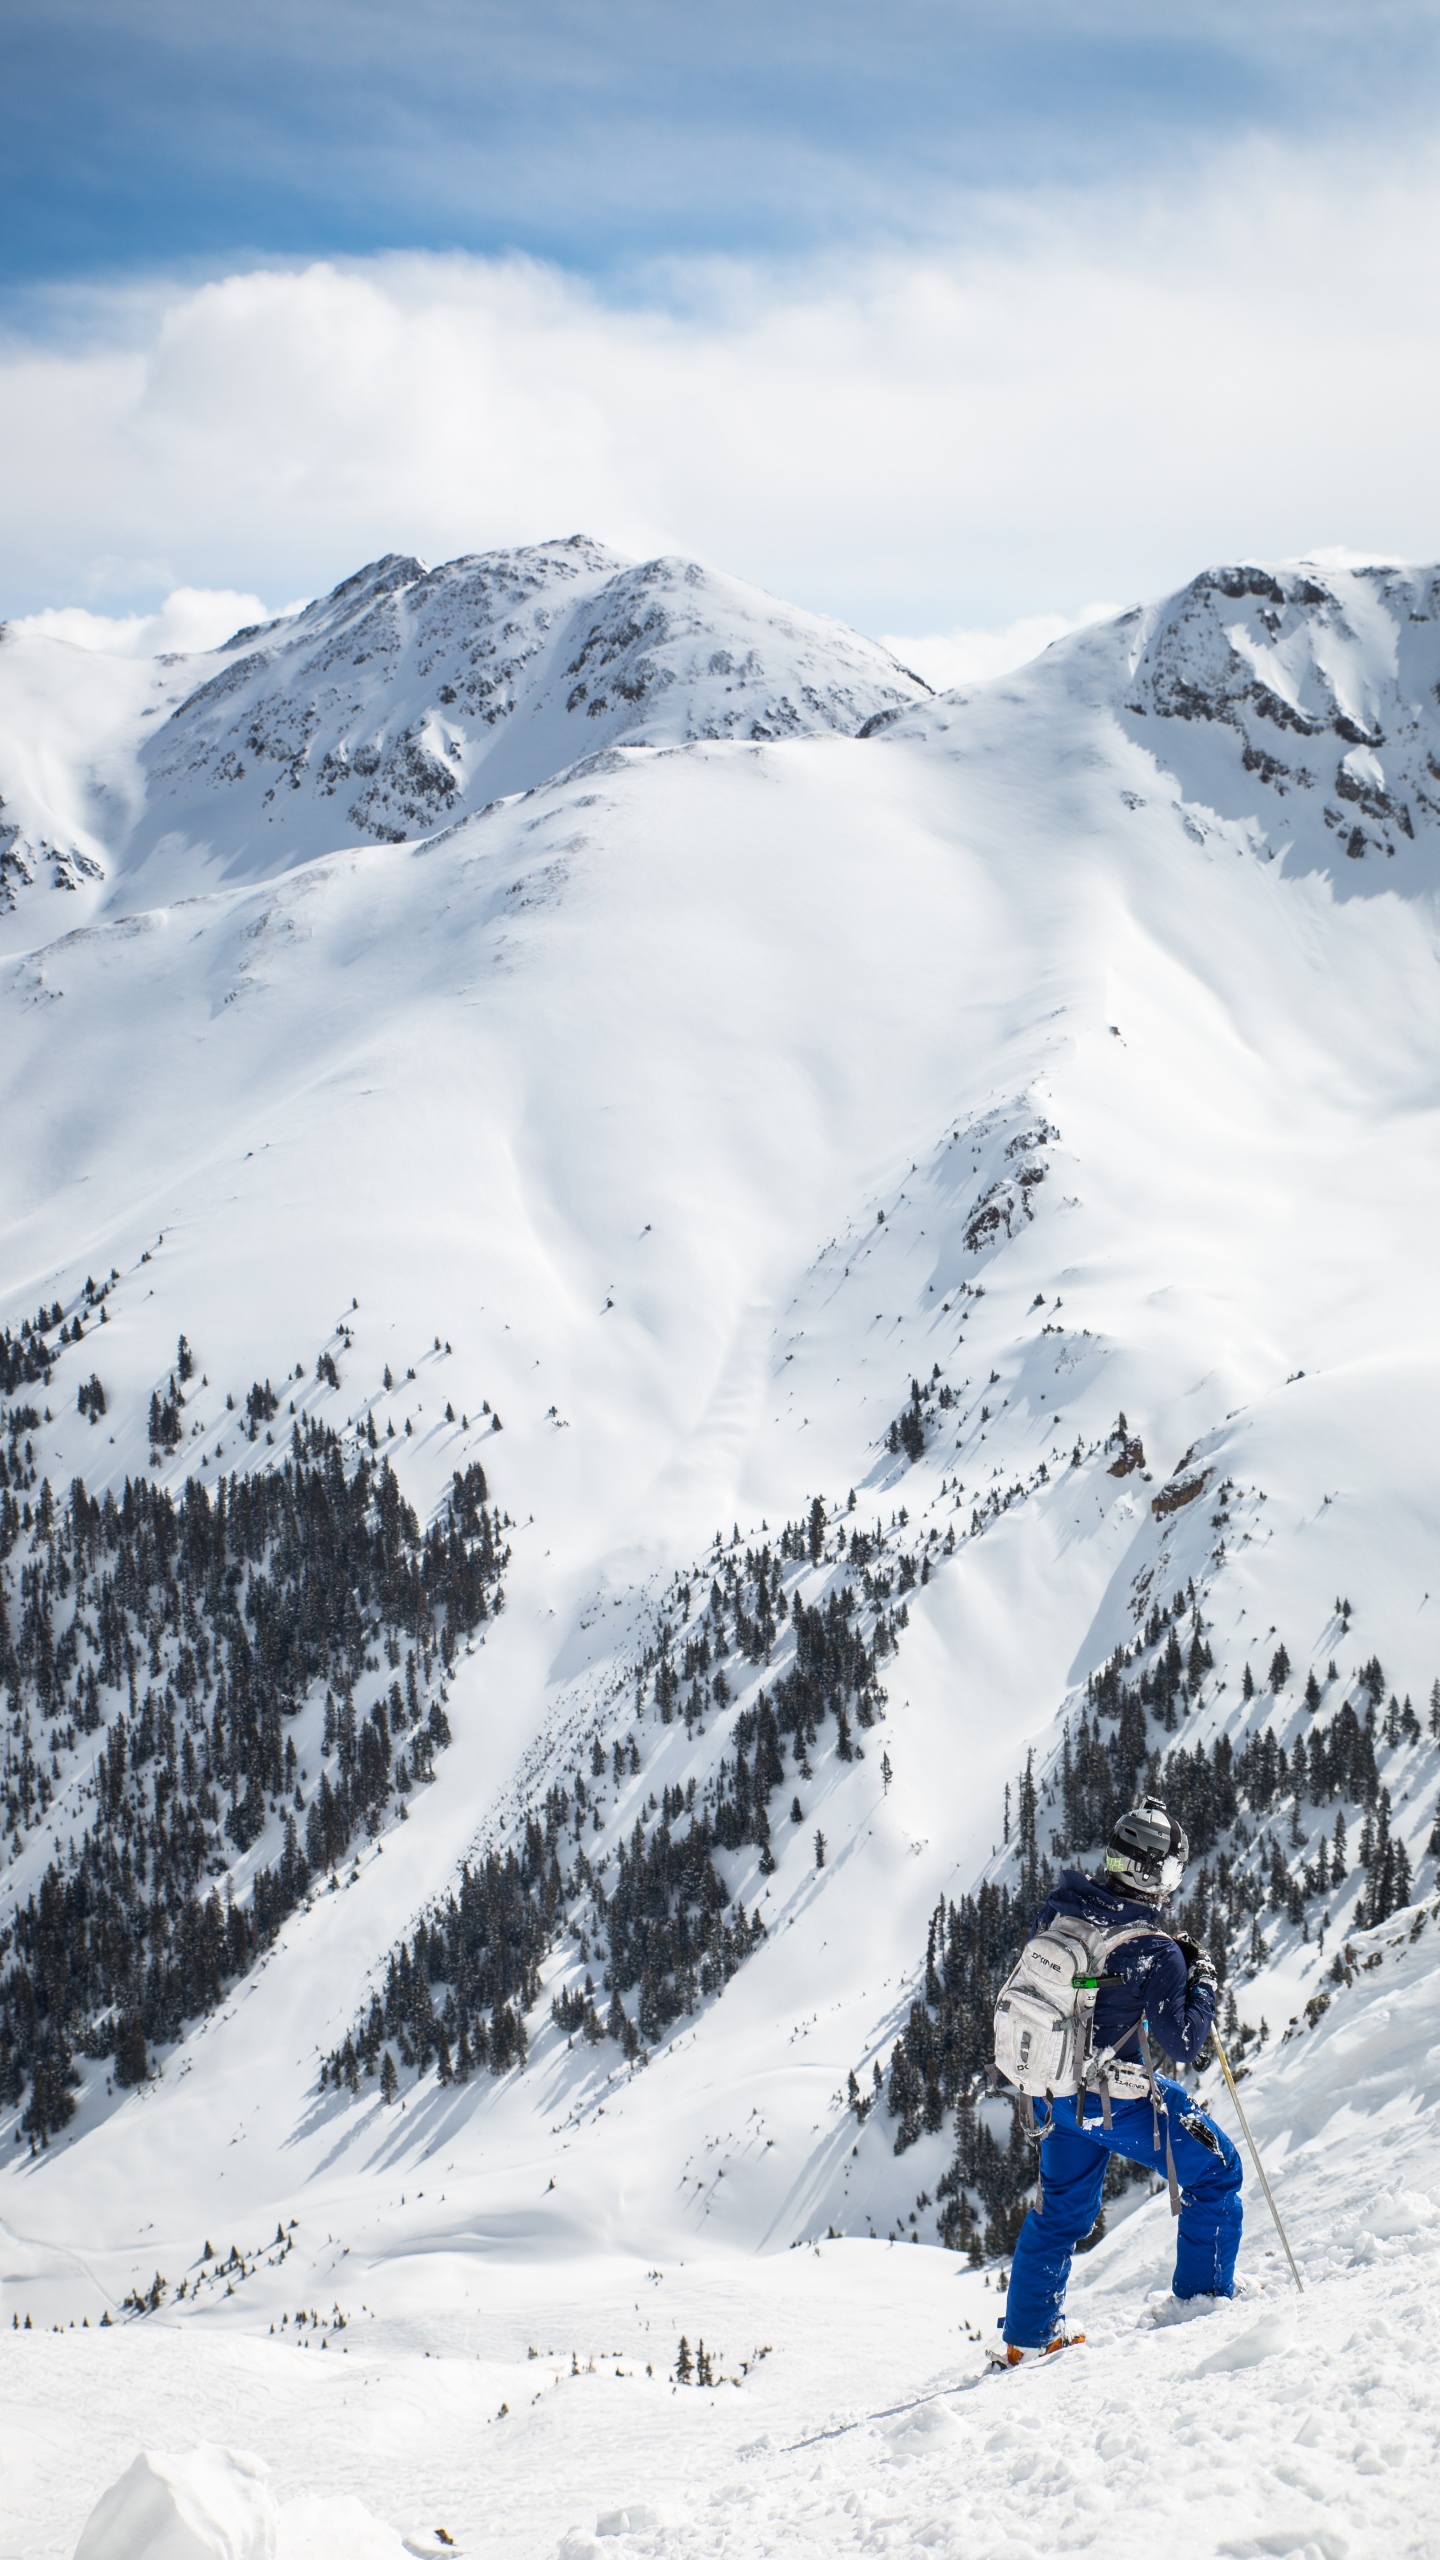 Personne à Cheval Sur le Ski de Neige Sur la Montagne Couverte de Neige Pendant la Journée. Wallpaper in 1440x2560 Resolution